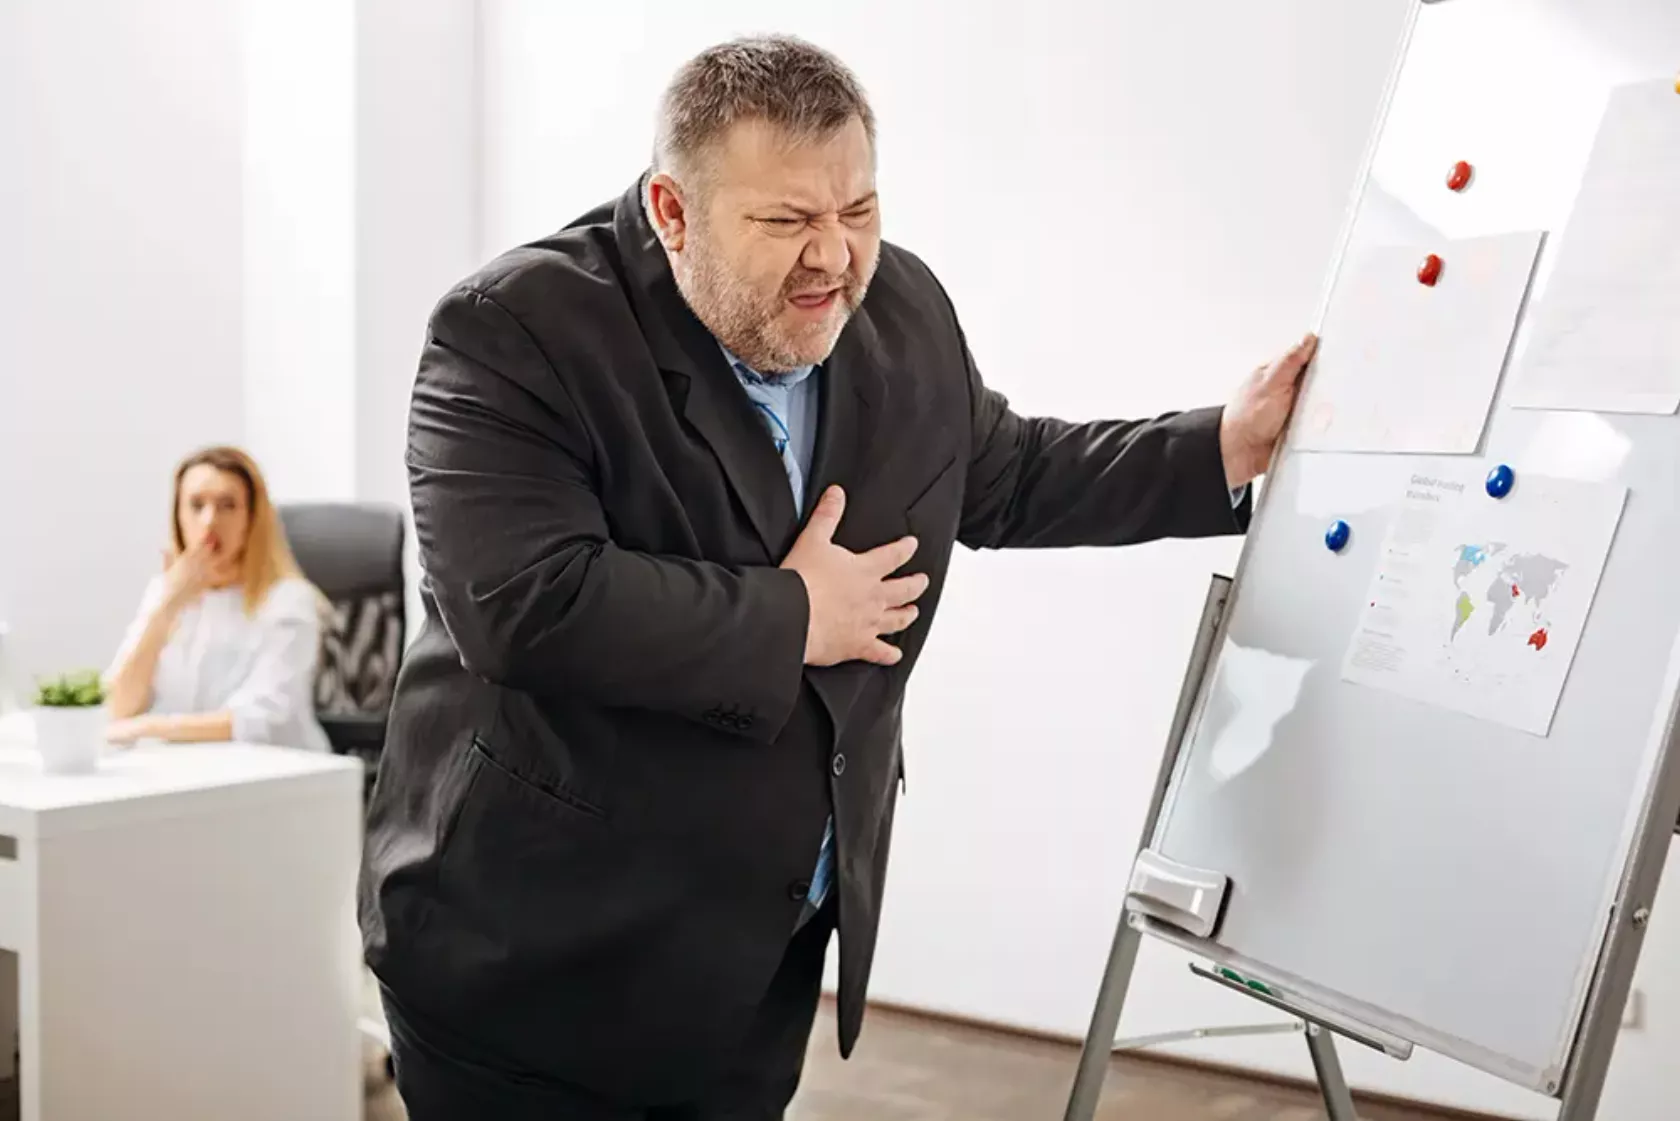 Mann greift sich während einer Präsentation im Büro mit schmerzerfülltem Gesichtsausdruck an die Brust.